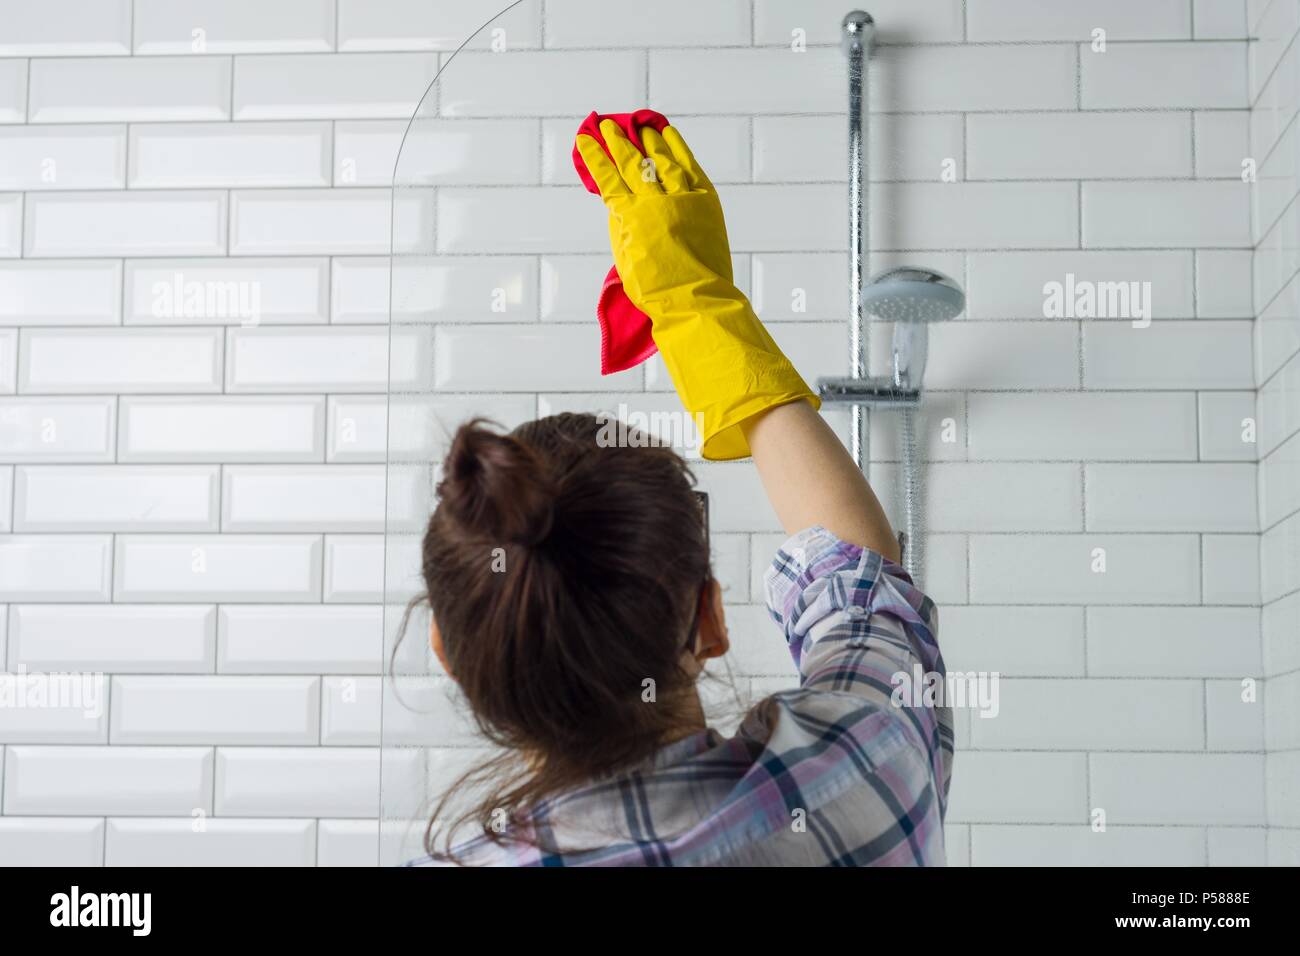 Pulizia e pulizia. Shot di una giovane donna che pulisce un bagno wc Foto  stock - Alamy